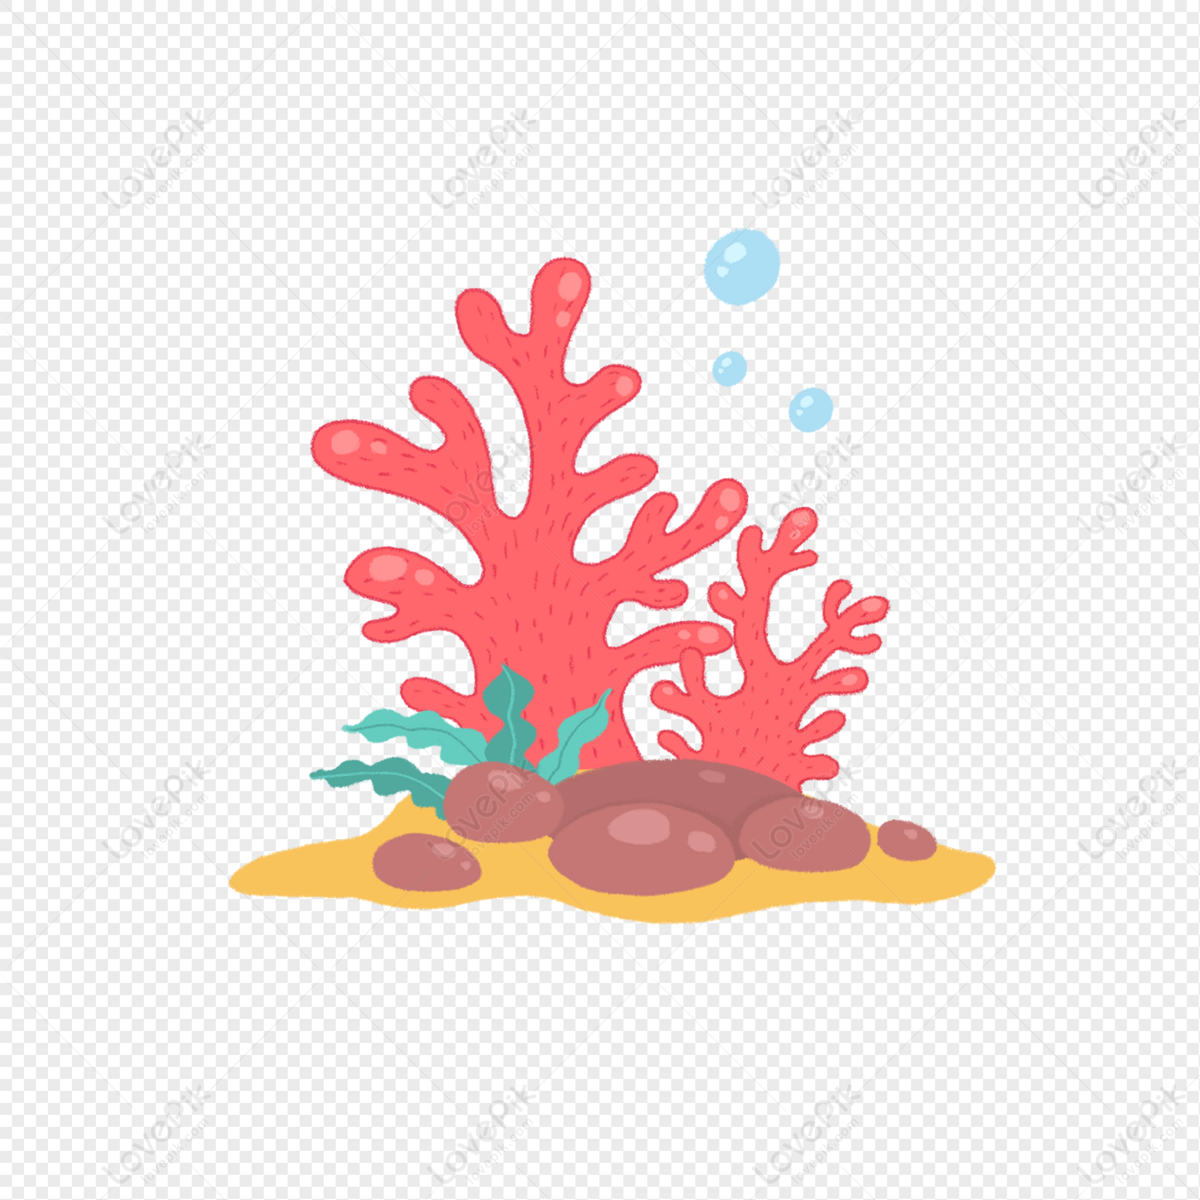 Nếu bạn muốn vẽ tay một bức tranh về san hô đỏ dưới đại dương, hãy xem hình ảnh này để lấy cảm hứng. Với những đường nét tinh tế, bạn sẽ tạo ra một bức tranh vô cùng đầy màu sắc và đẹp mắt.